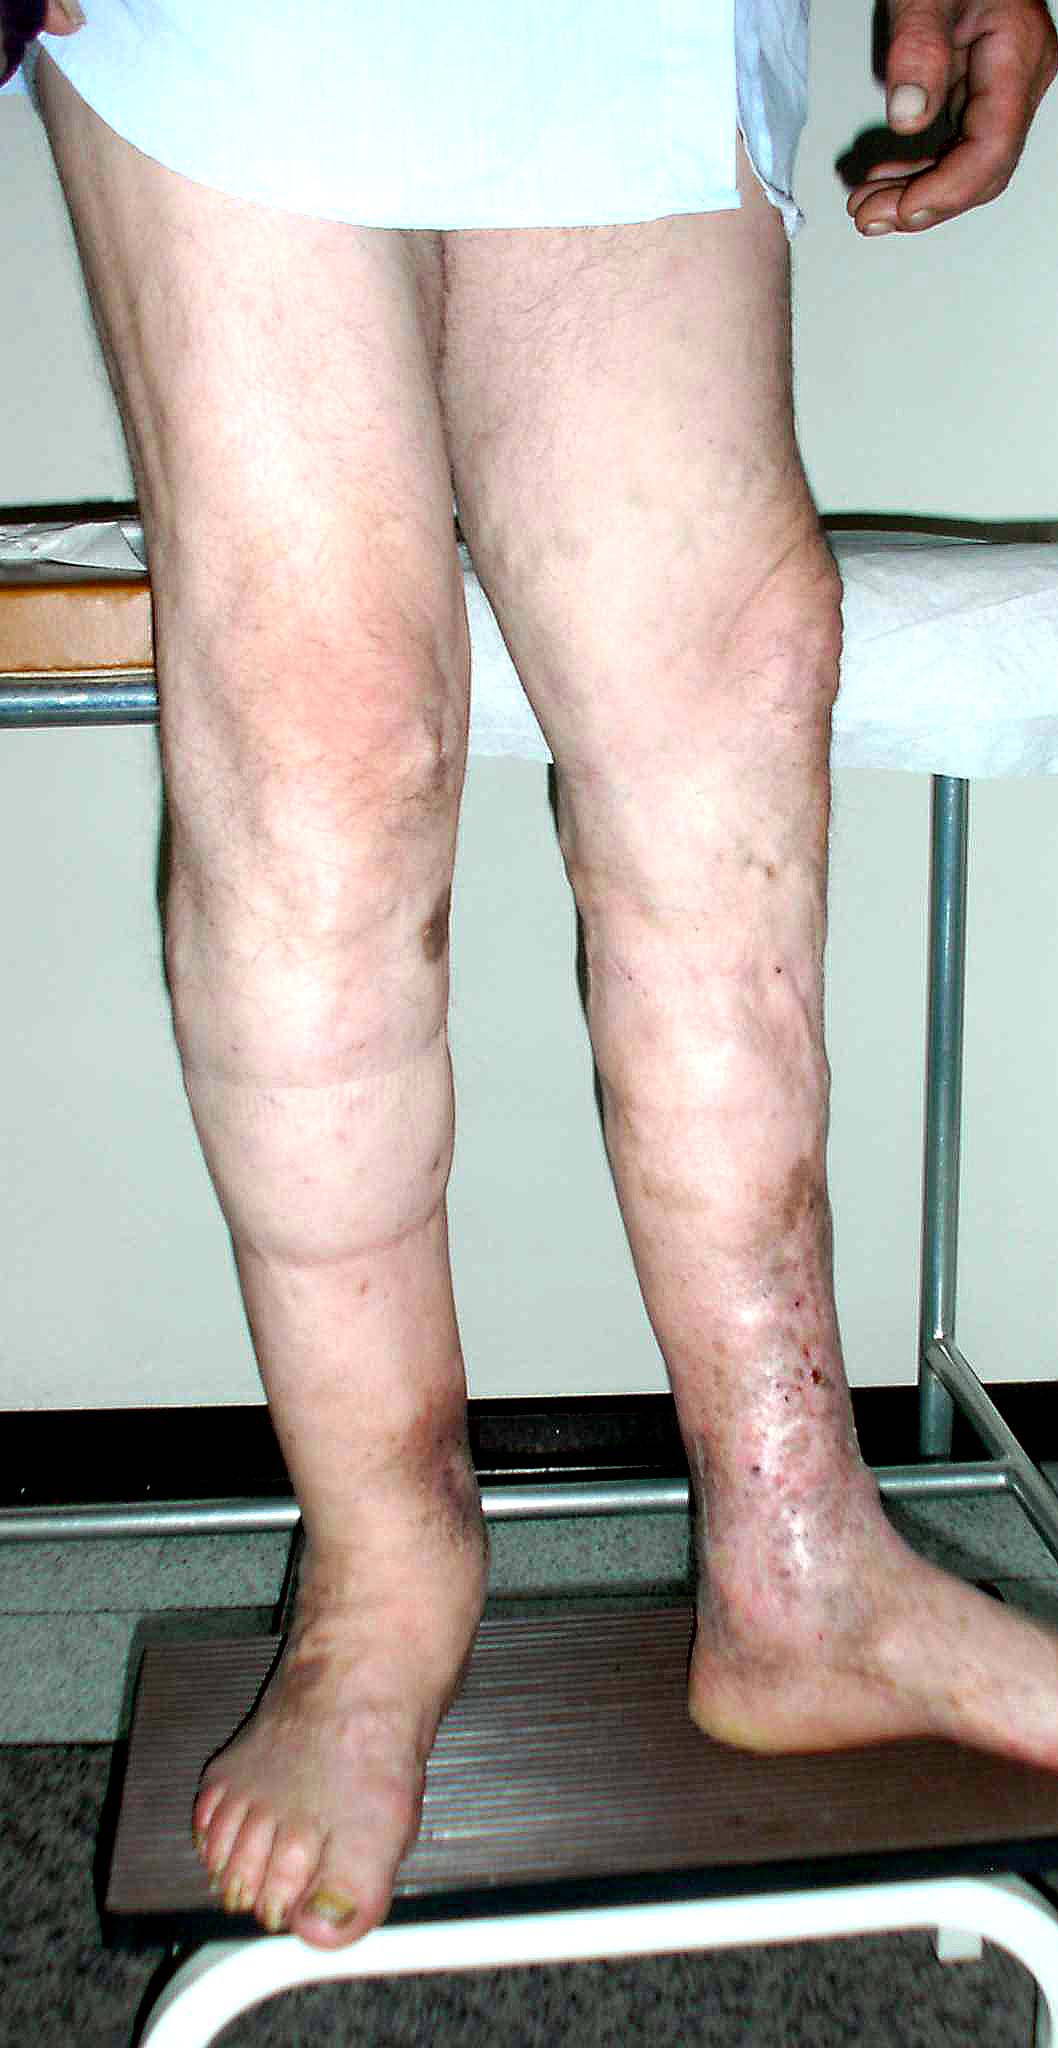 sindrome post-trombotica flebo-linfedema della gamba destra